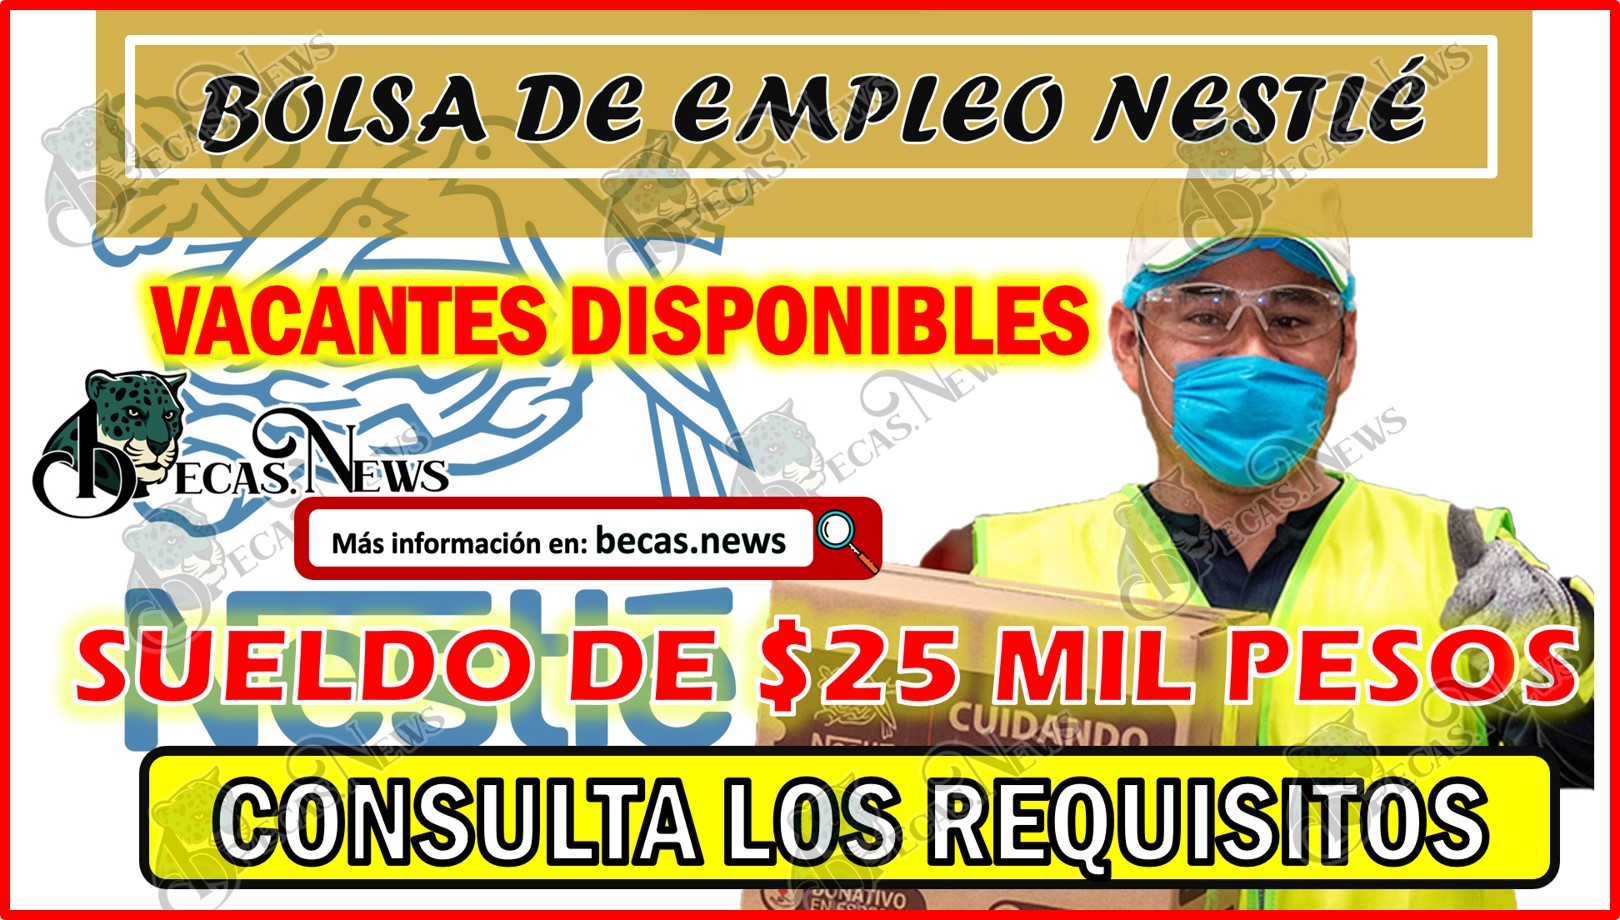 Vacantes disponibles en Nestlé con sueldo mensual de $25,000 pesos